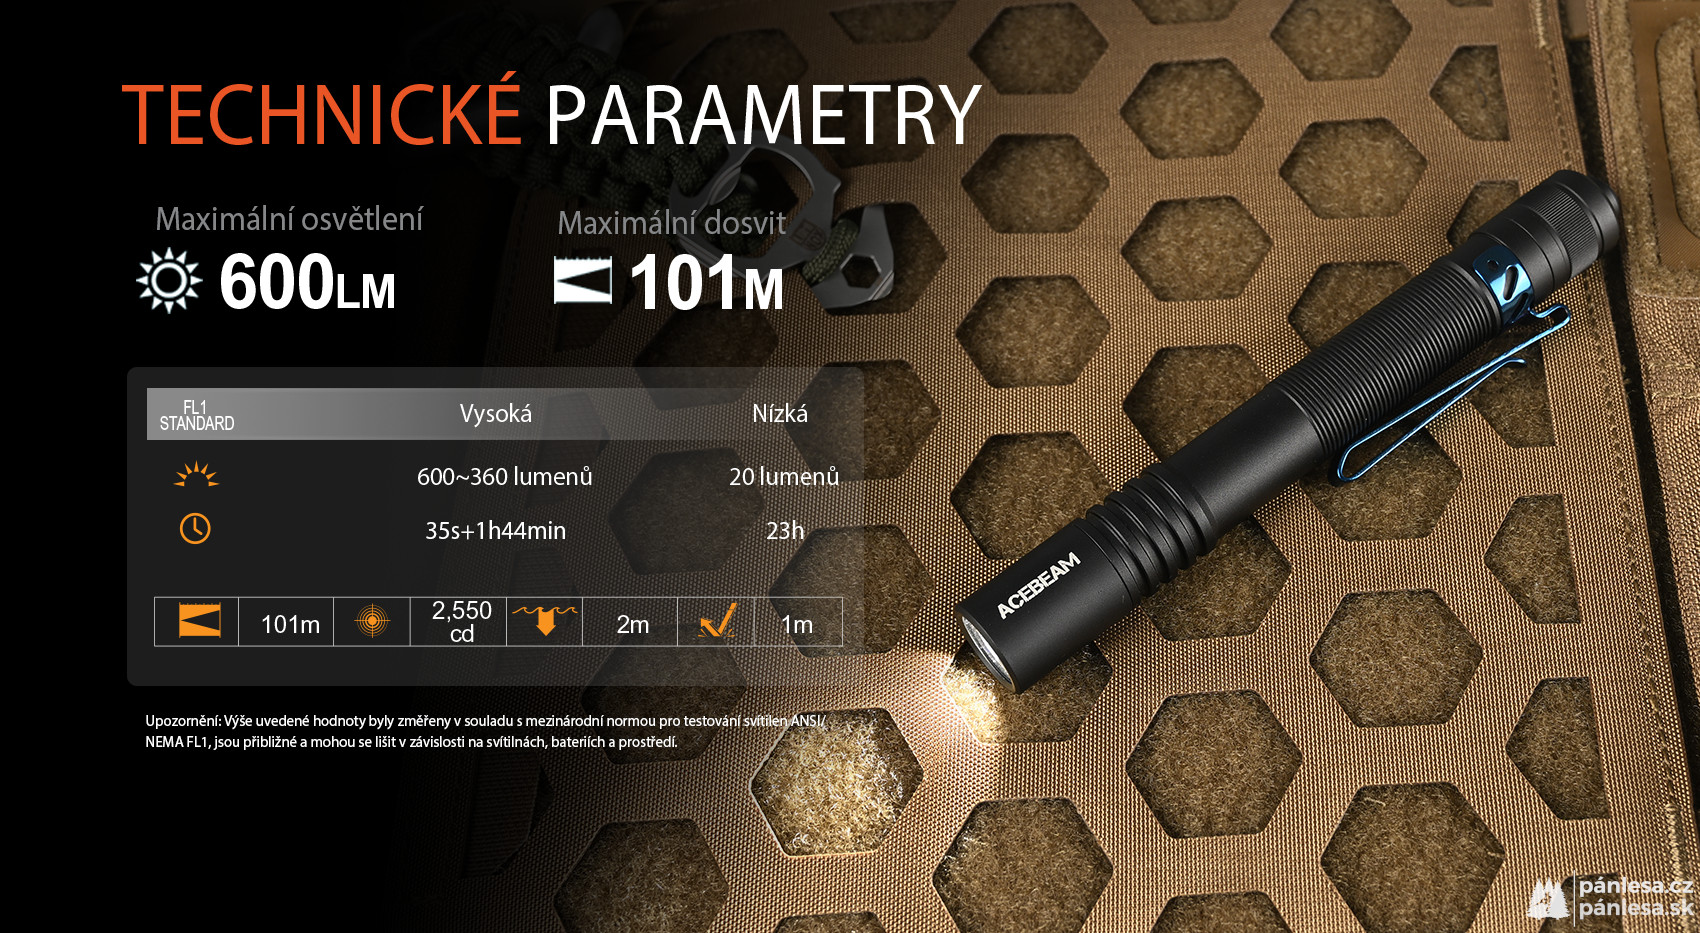 AceBeam Pokelit 2AA, 600 lm, black - LED svítilna, černá